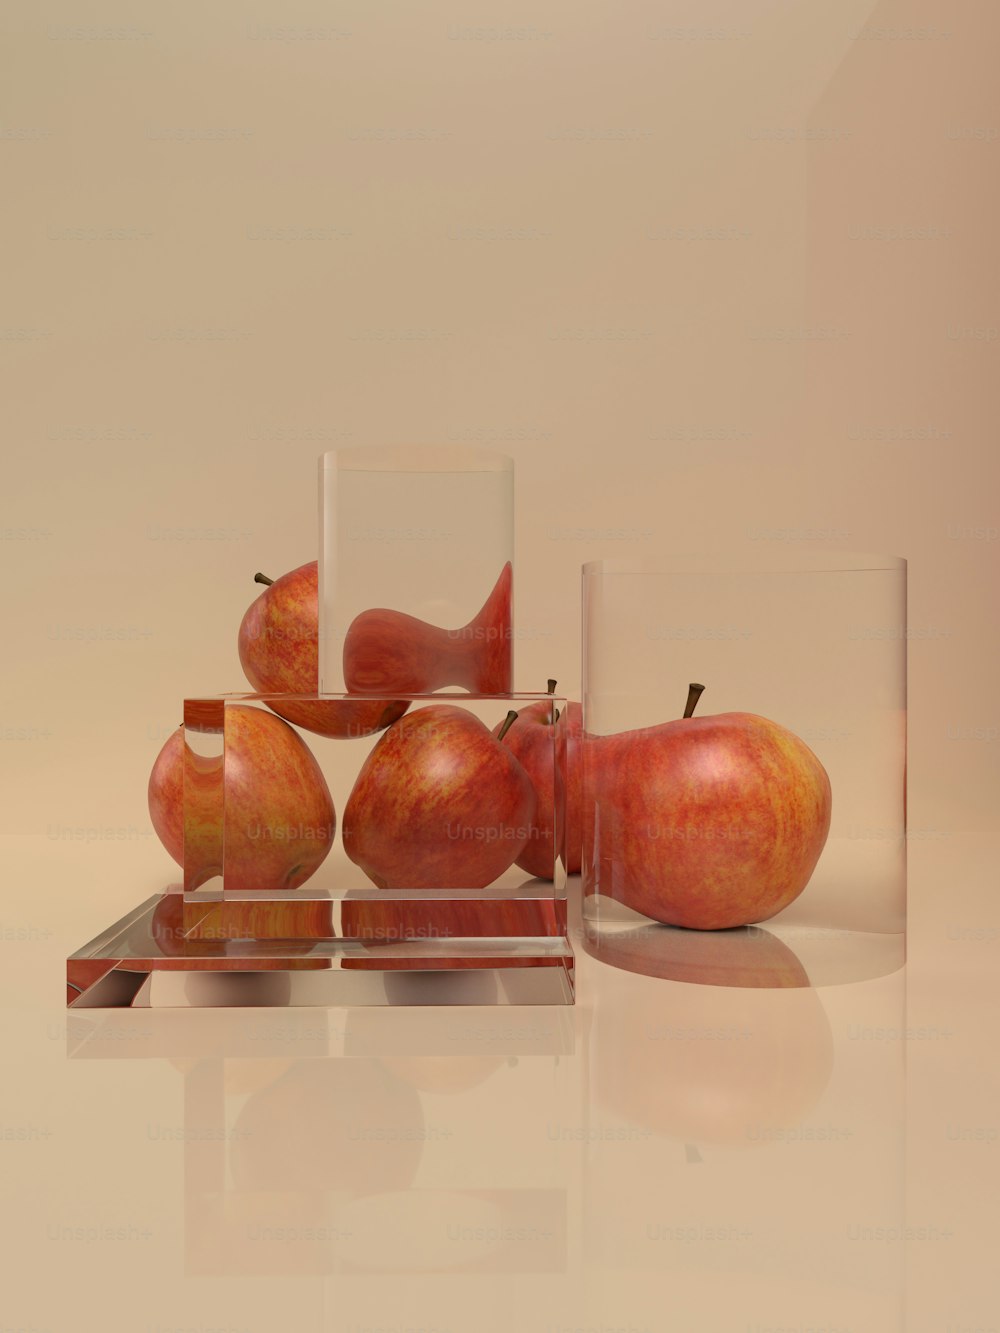 um grupo de vasos de vidro com maçãs neles